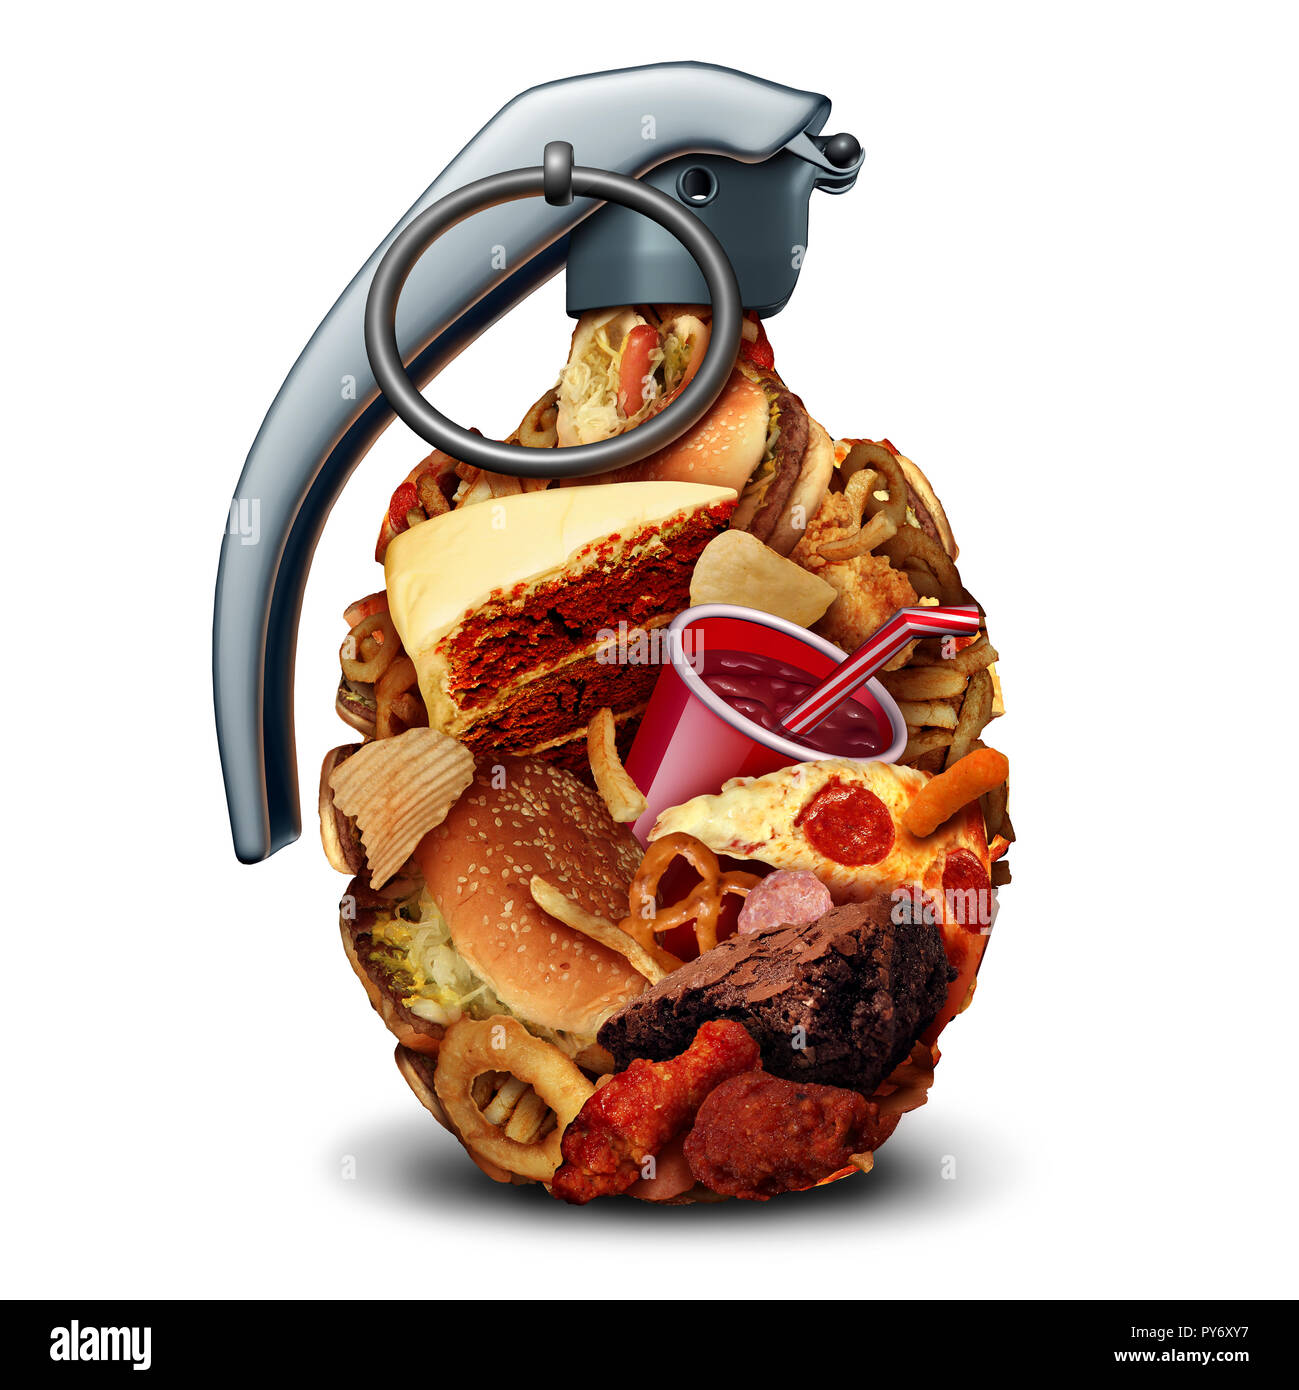 Dieta malsana dei rischi per la salute e la scarsa nutrizione e pericolo di pressione del sangue alta rischio dovuto a mangiare cibo spazzatura con zucchero e sodio. Foto Stock